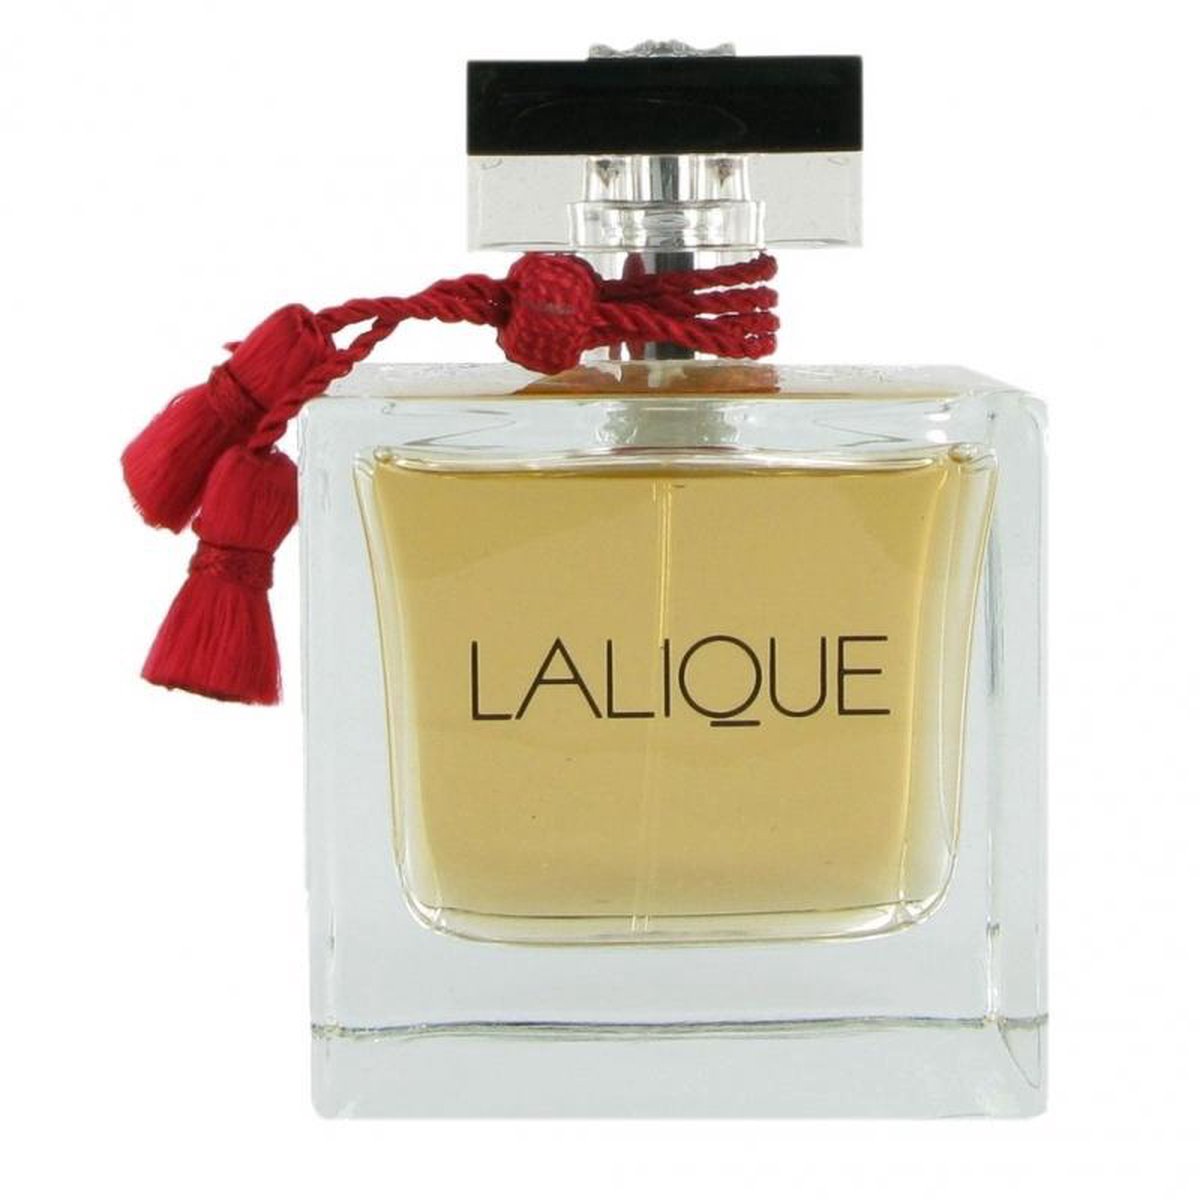 Lalique Le Parfum - 50ml - Eau de parfum